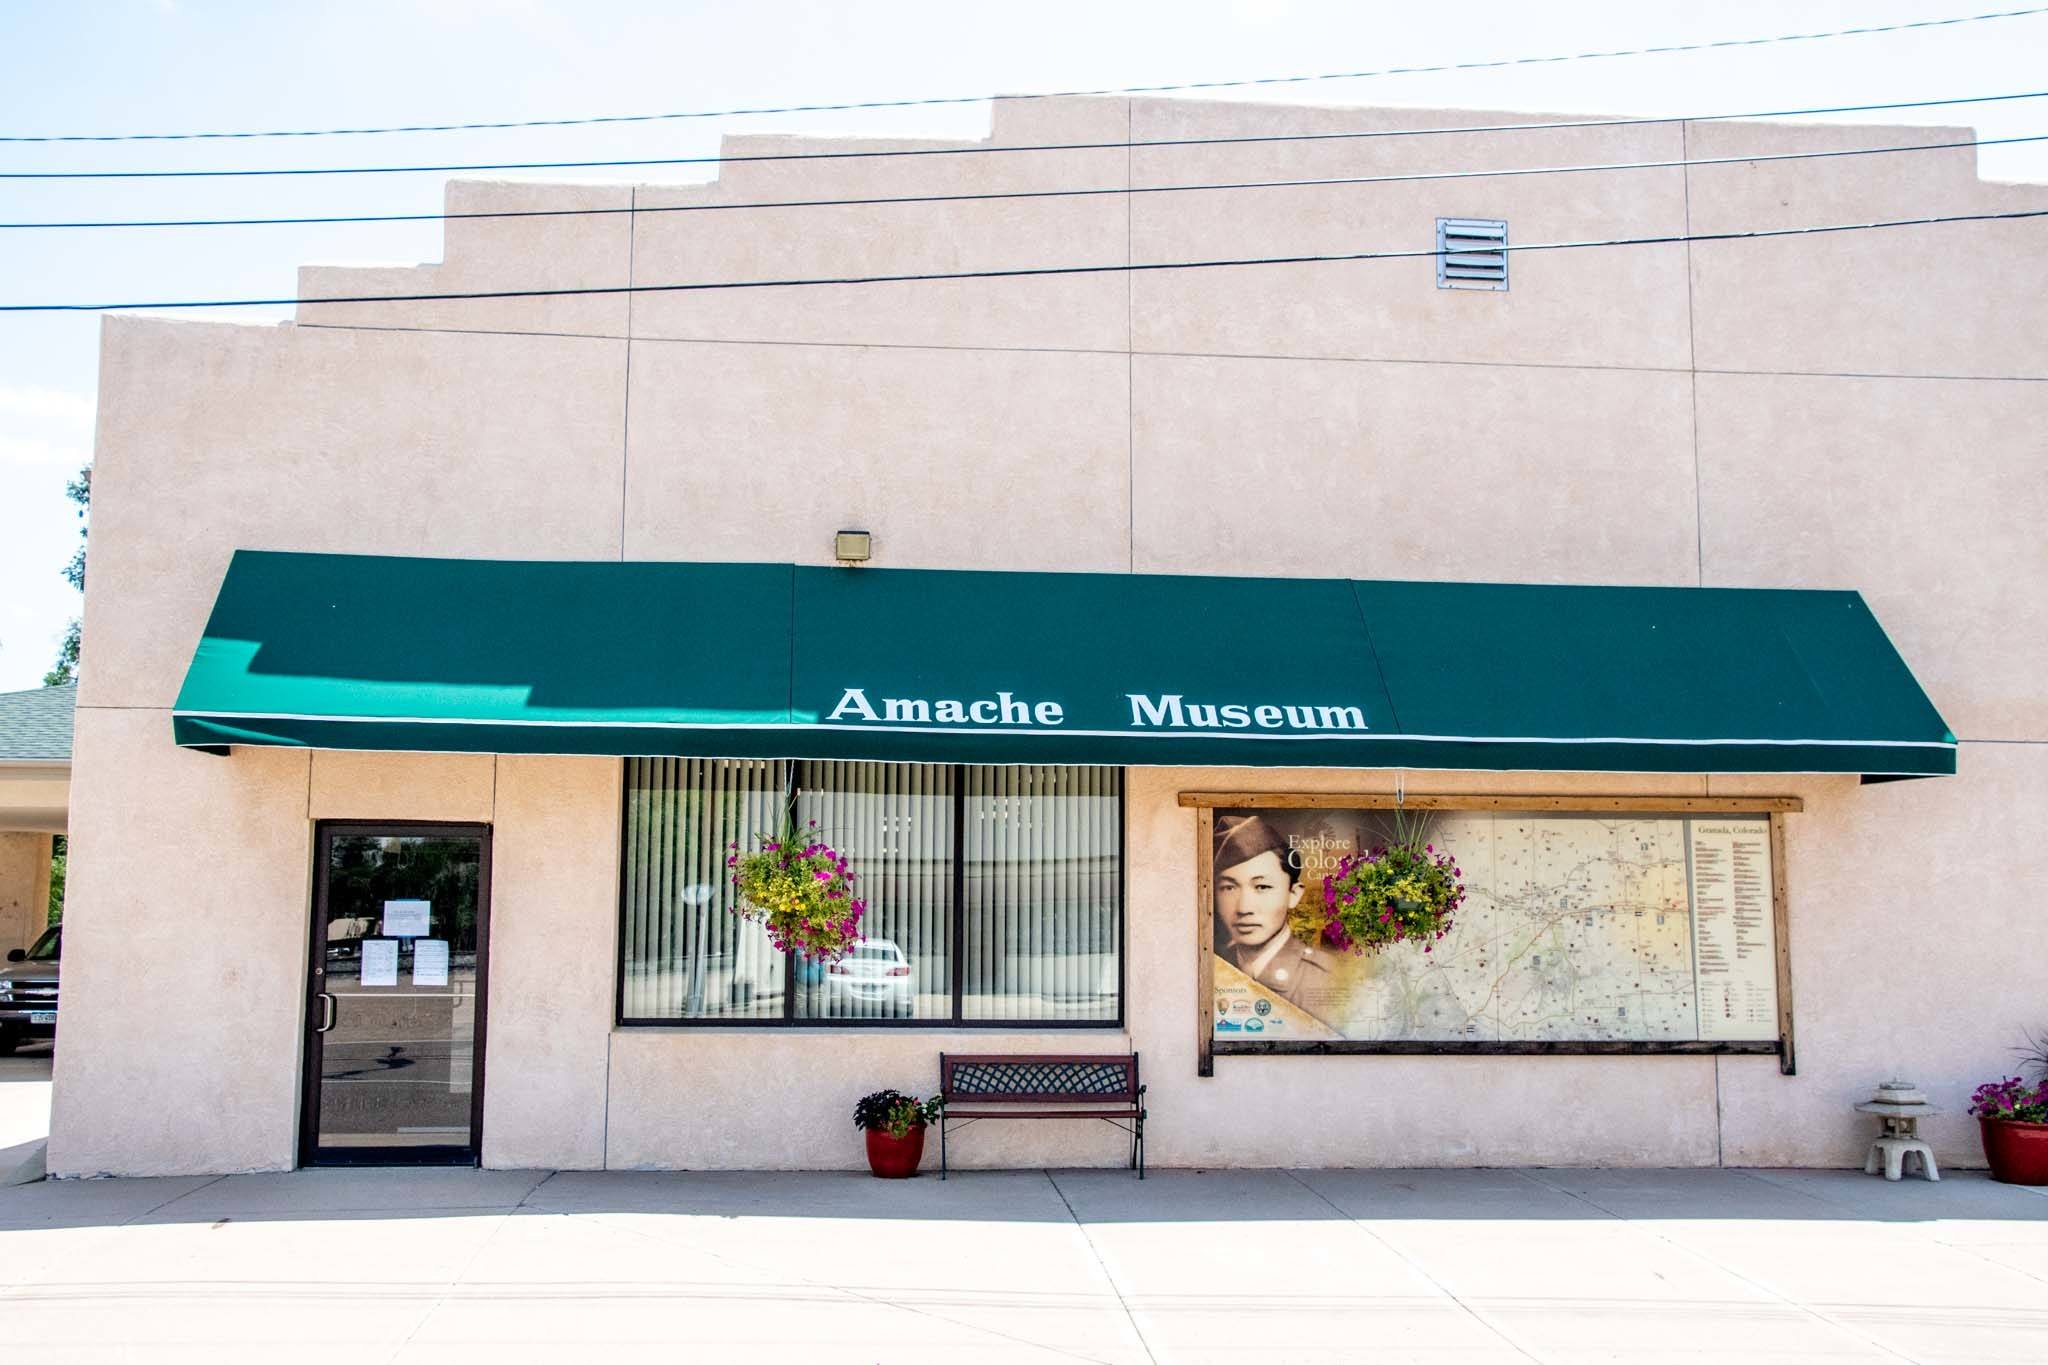 The Amache Museum in Granada Colorado